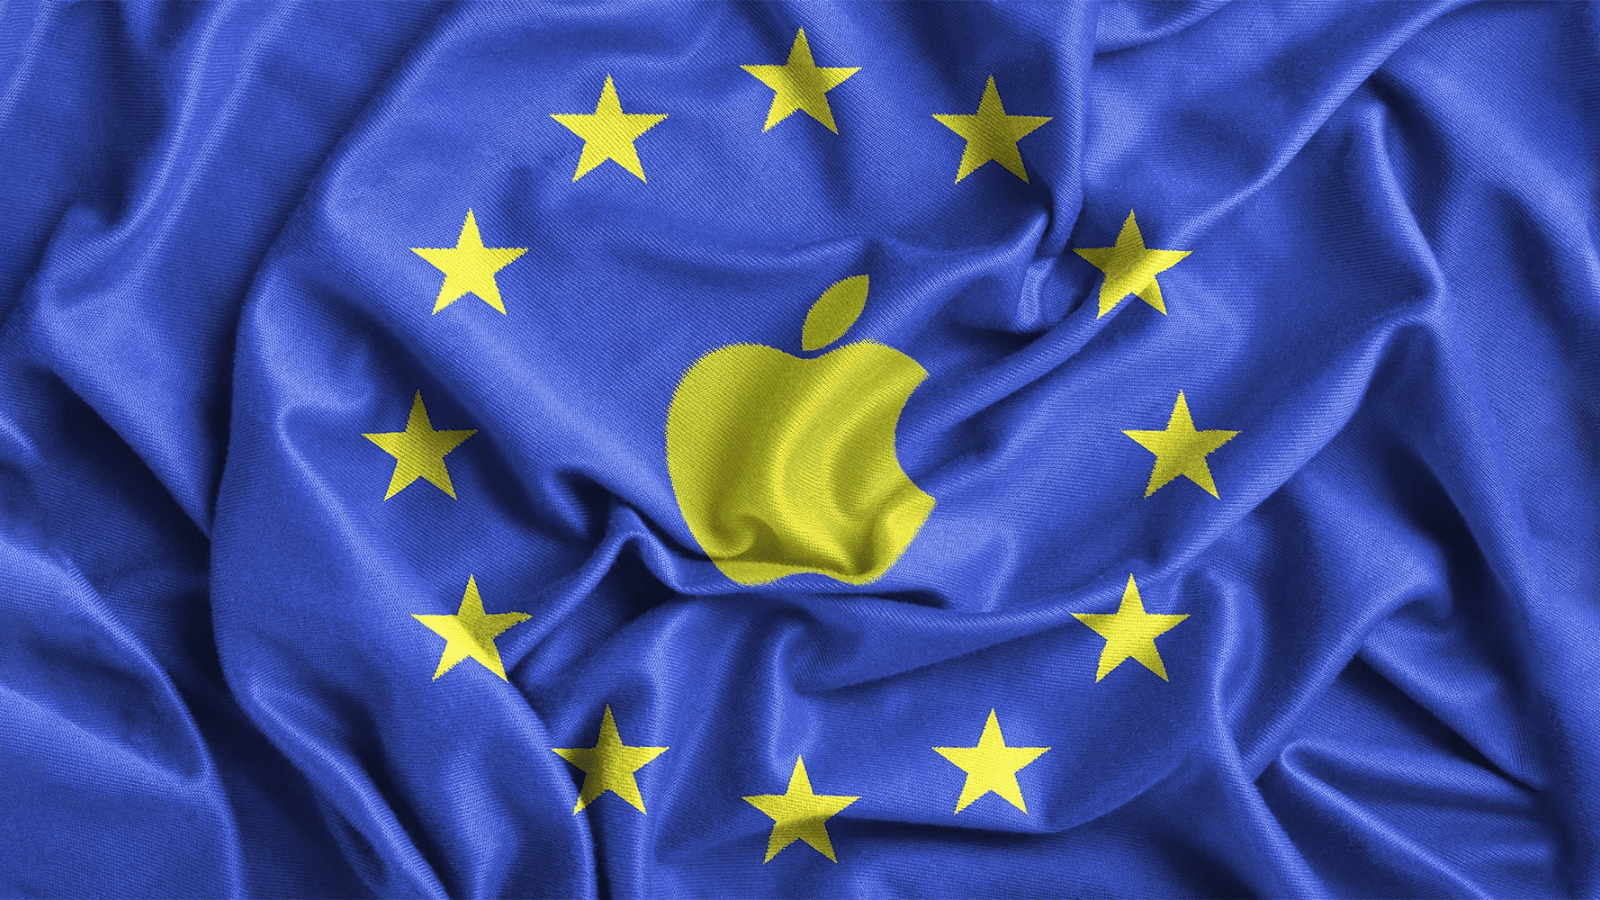 Nova lei europeia vai obrigar apple a liberar lojas de apps de terceiros. A legislação afetará diversas empresas gigantes em tecnologia, porém, a apple parece ser a mais afetada pois deverá liberar lojas de apps terceiras.